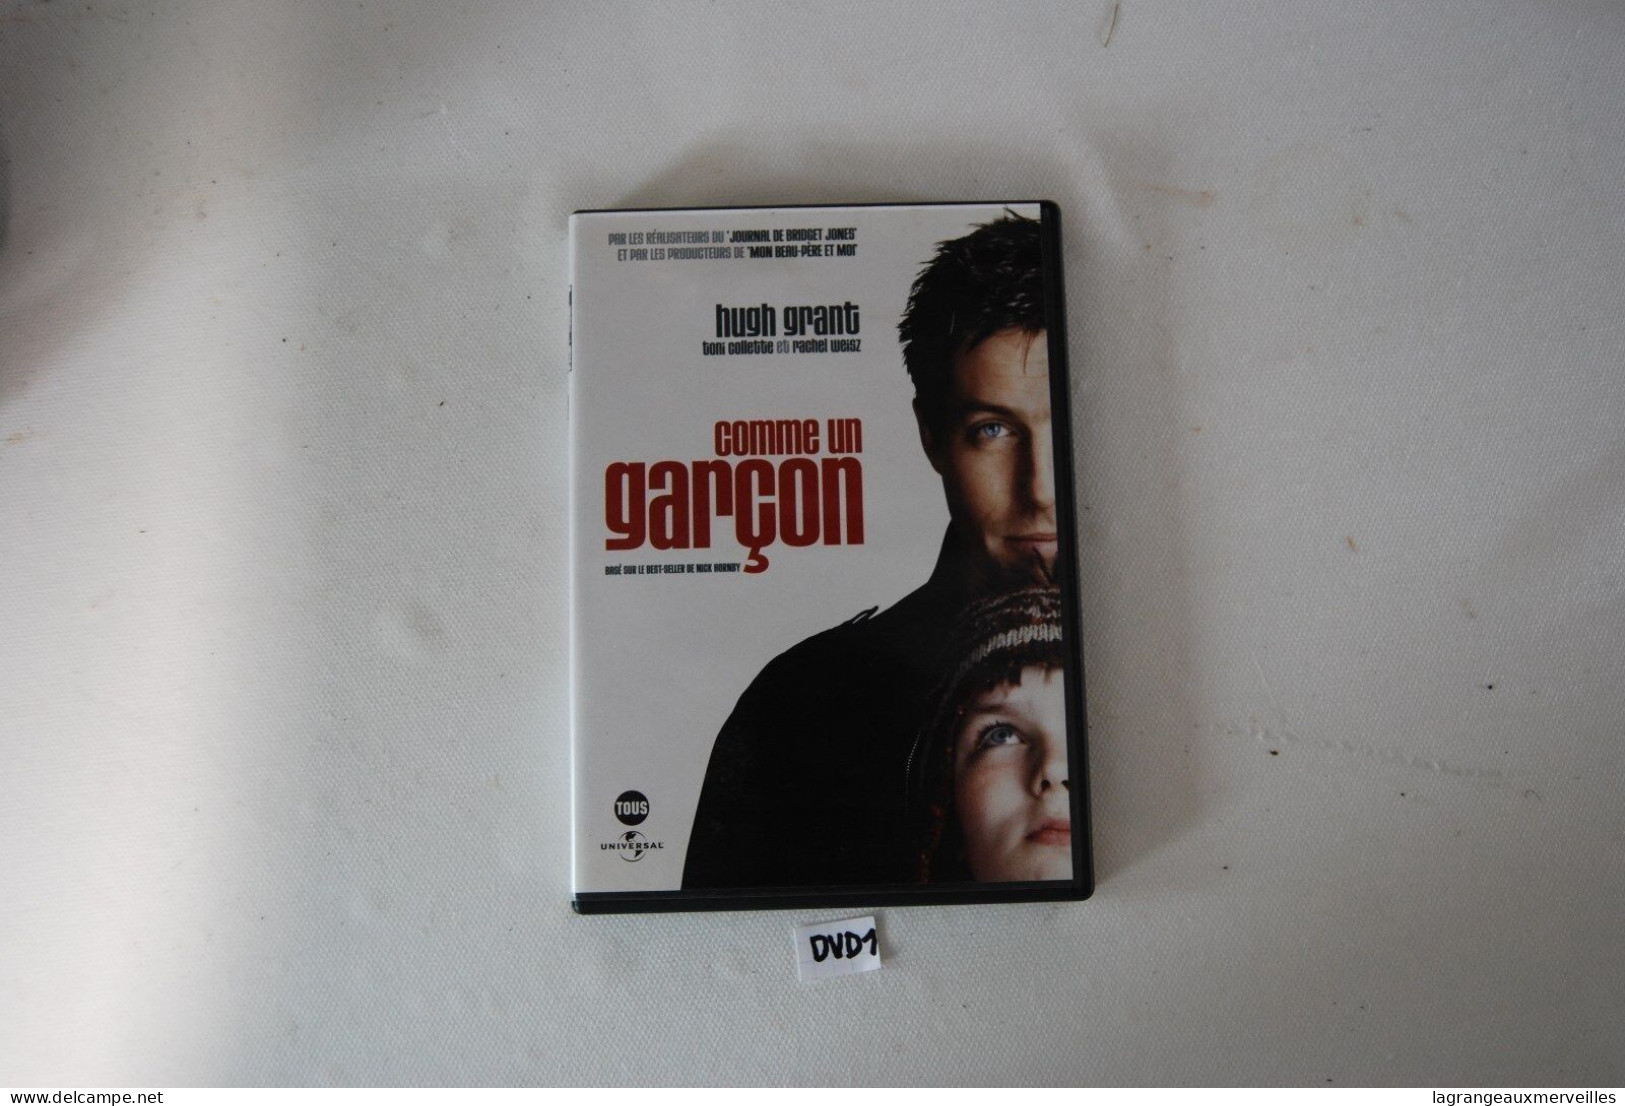 DVD 1 - COMME UN GARCON - HUGH GRANT - Infantiles & Familial